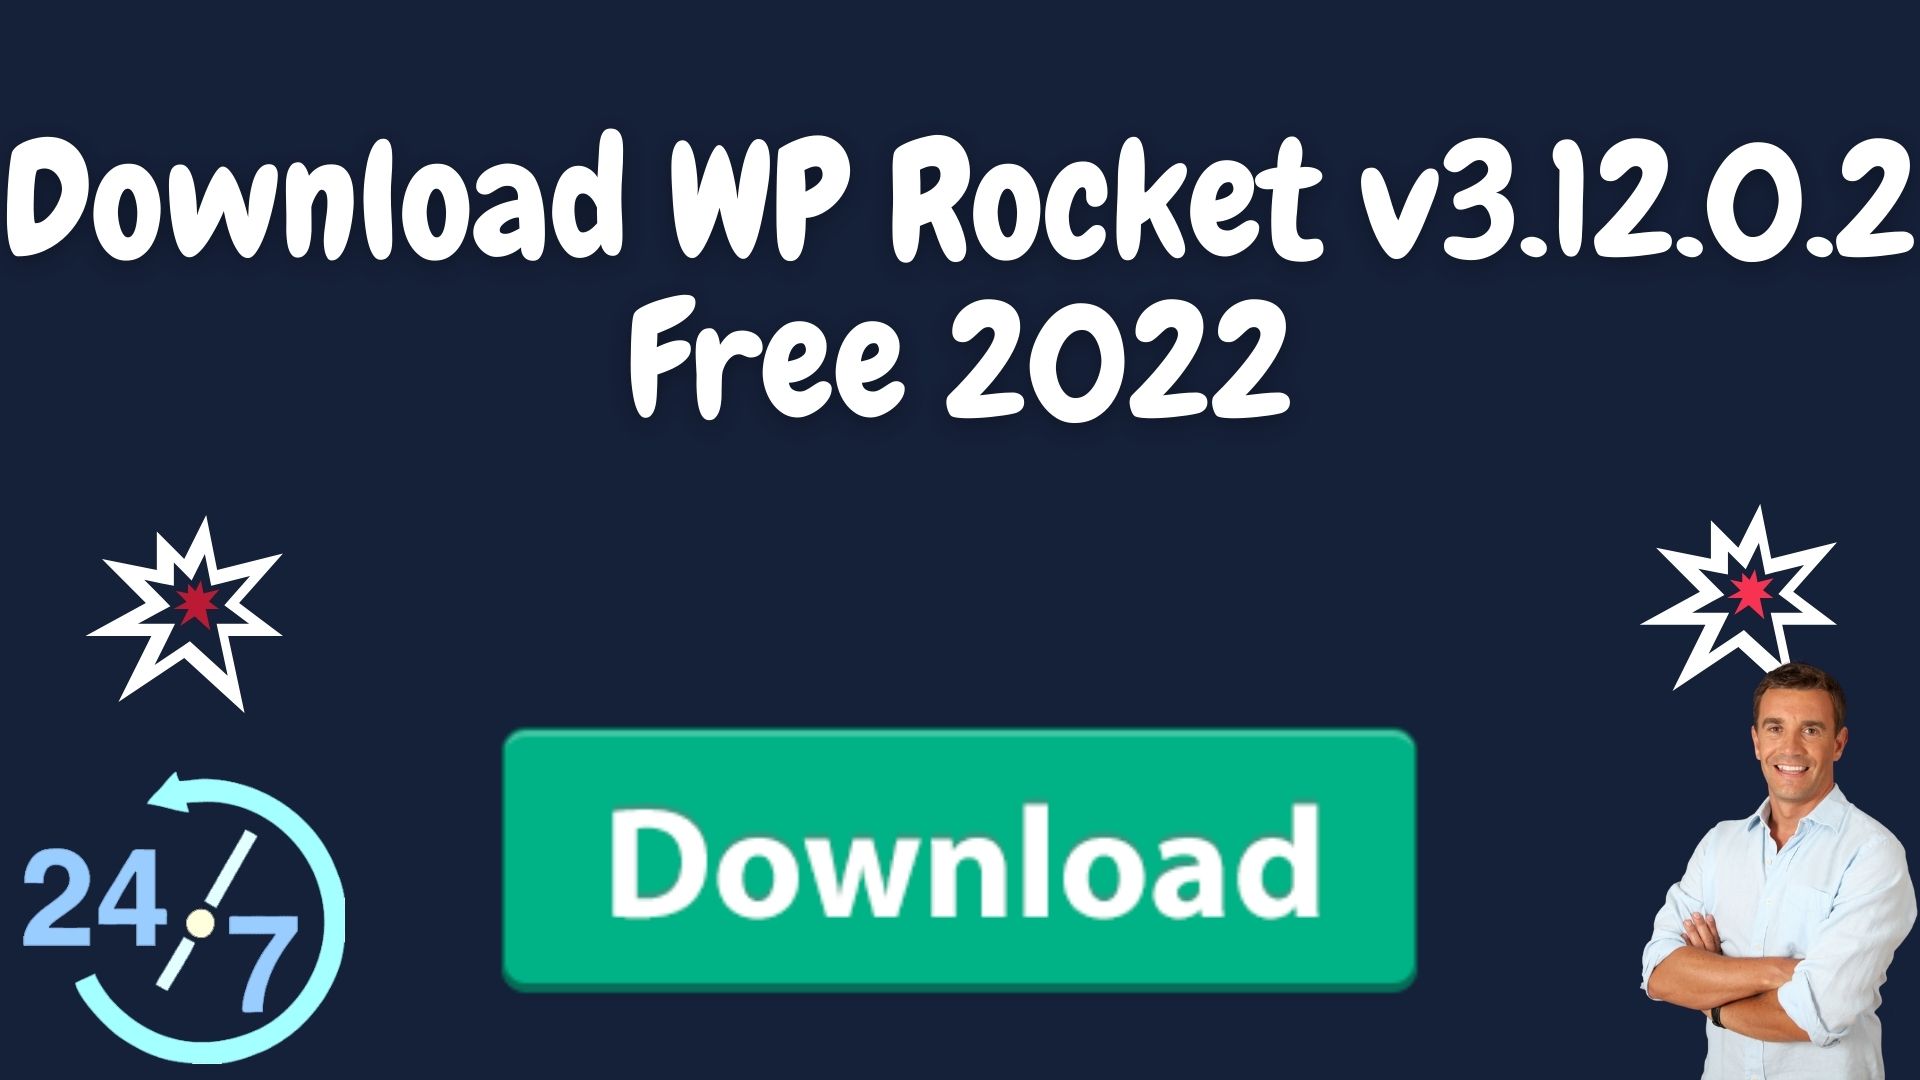 Download Wp Rocket V3.12.0.2 Free 2022